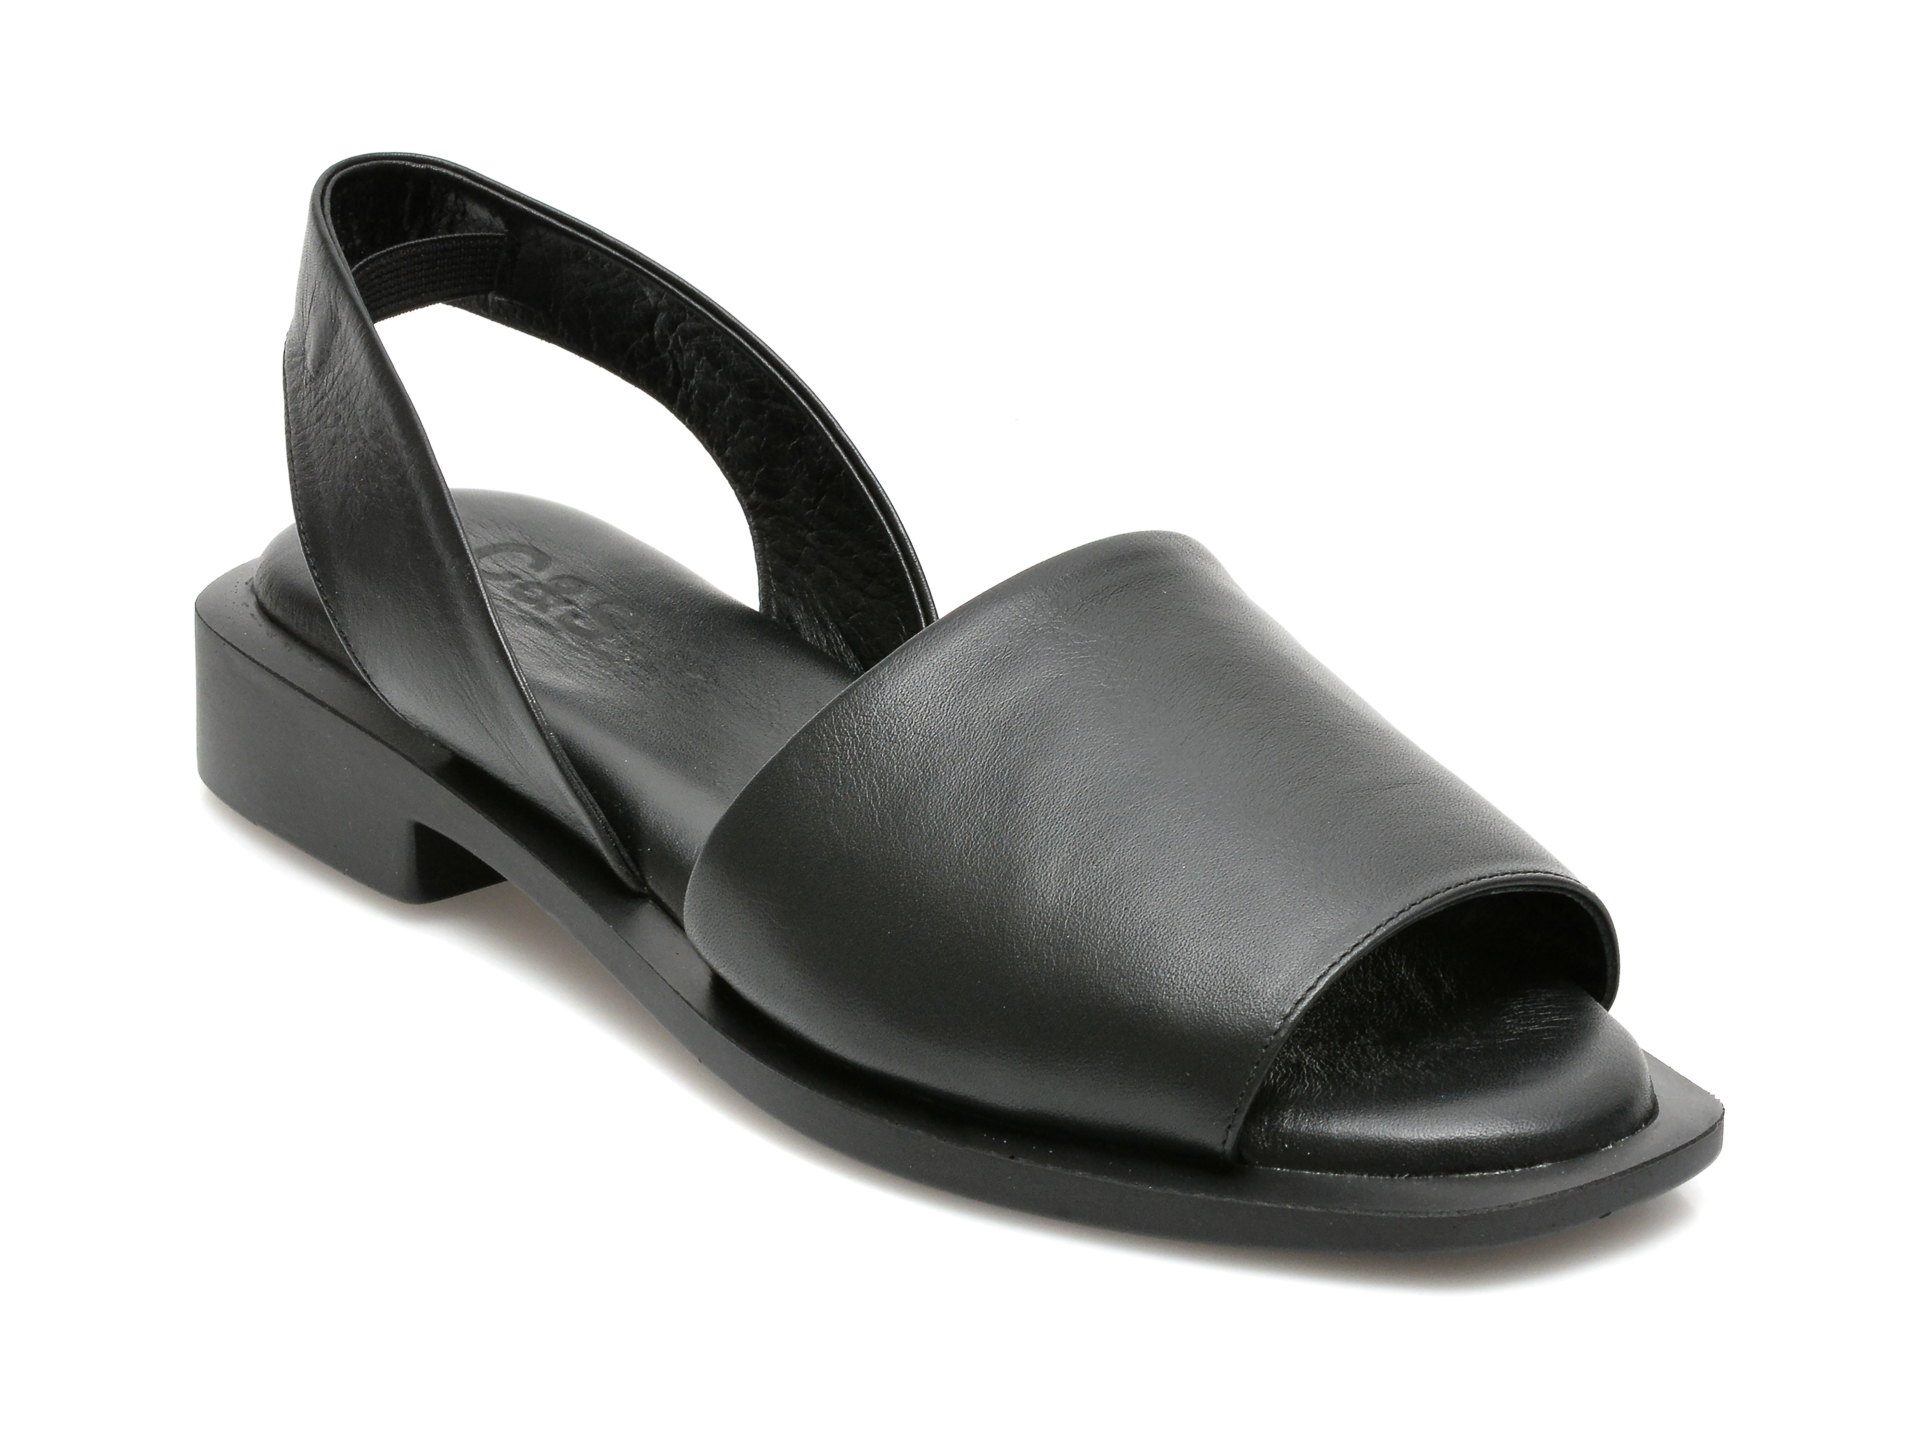 Sandale C & S negre, 158105, din piele naturala C & S